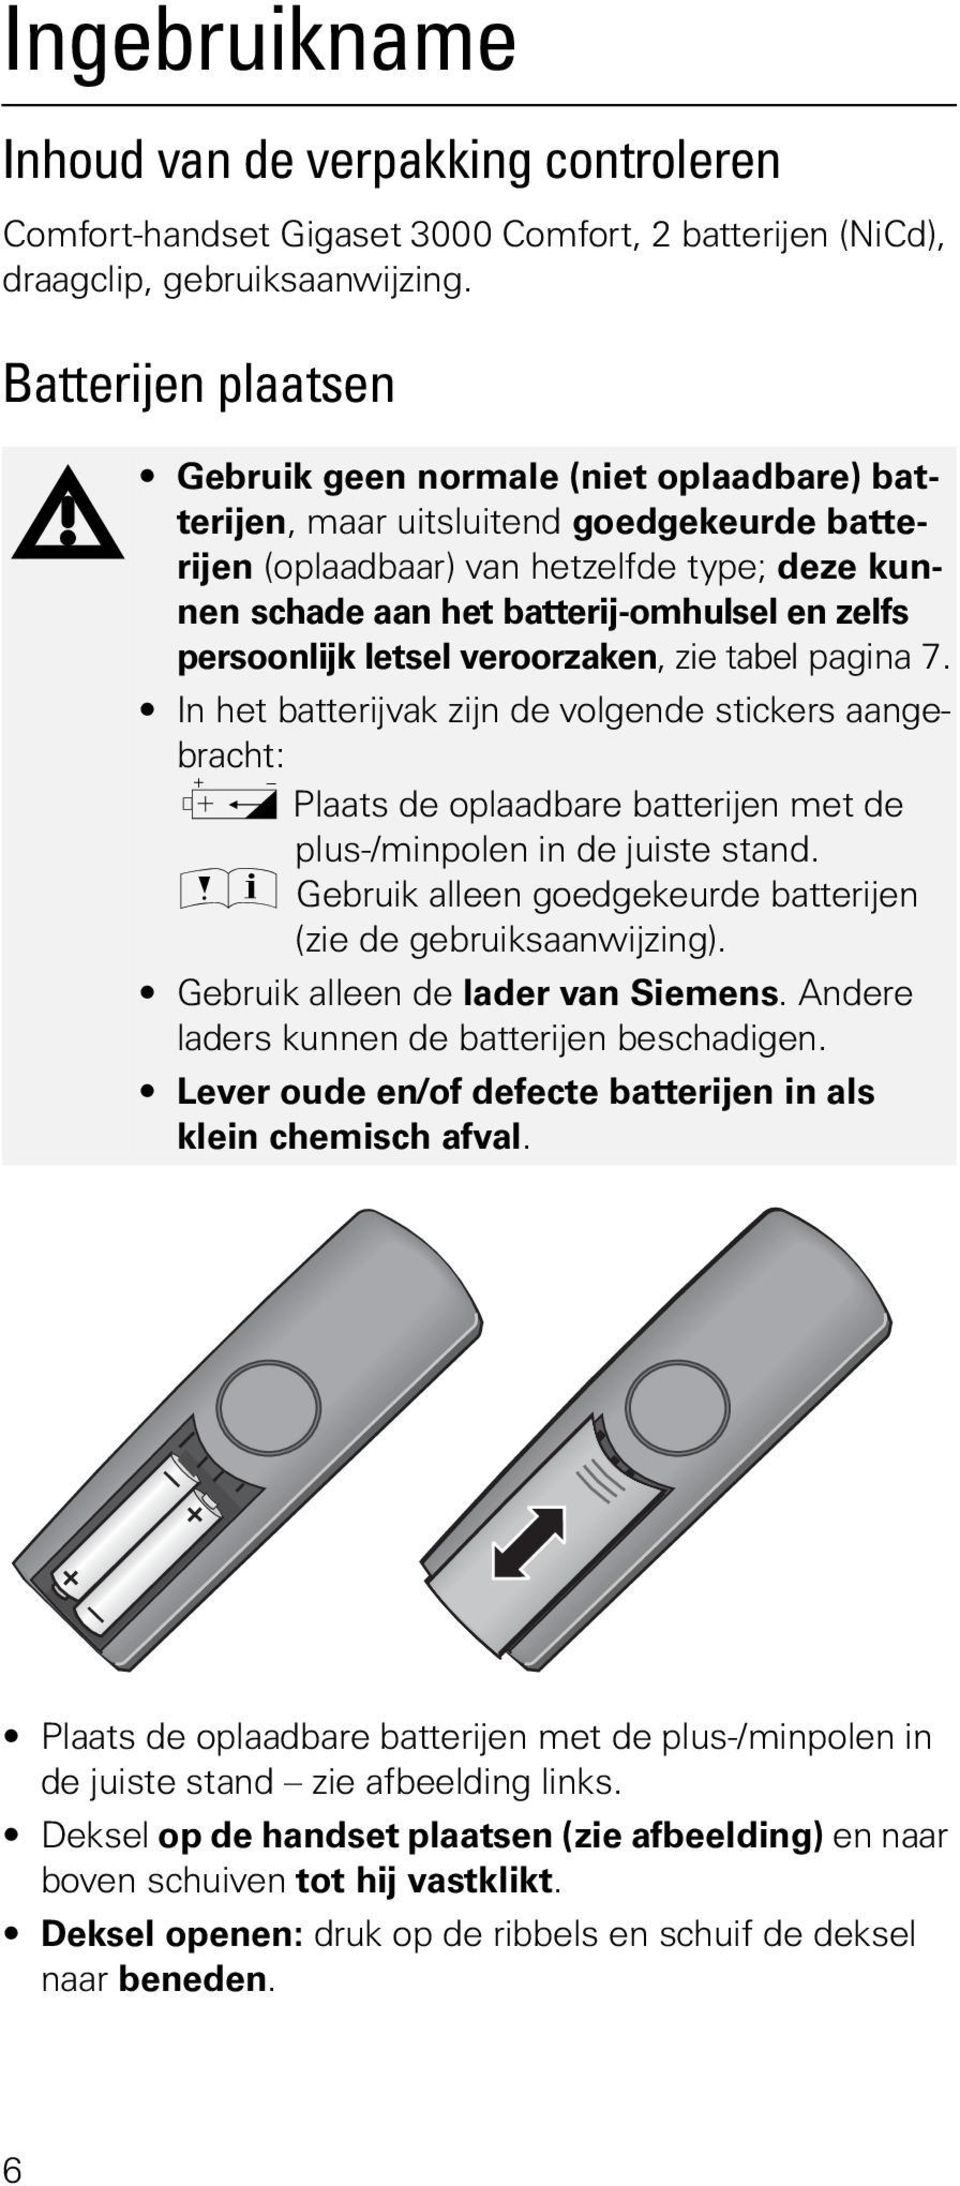 persoonlijk letsel veroorzaken, zie tabel pagina 7. In het batterijvak zijn de volgende stickers aangebracht: g Plaats de oplaadbare batterijen met de plus-/minpolen in de juiste stand.